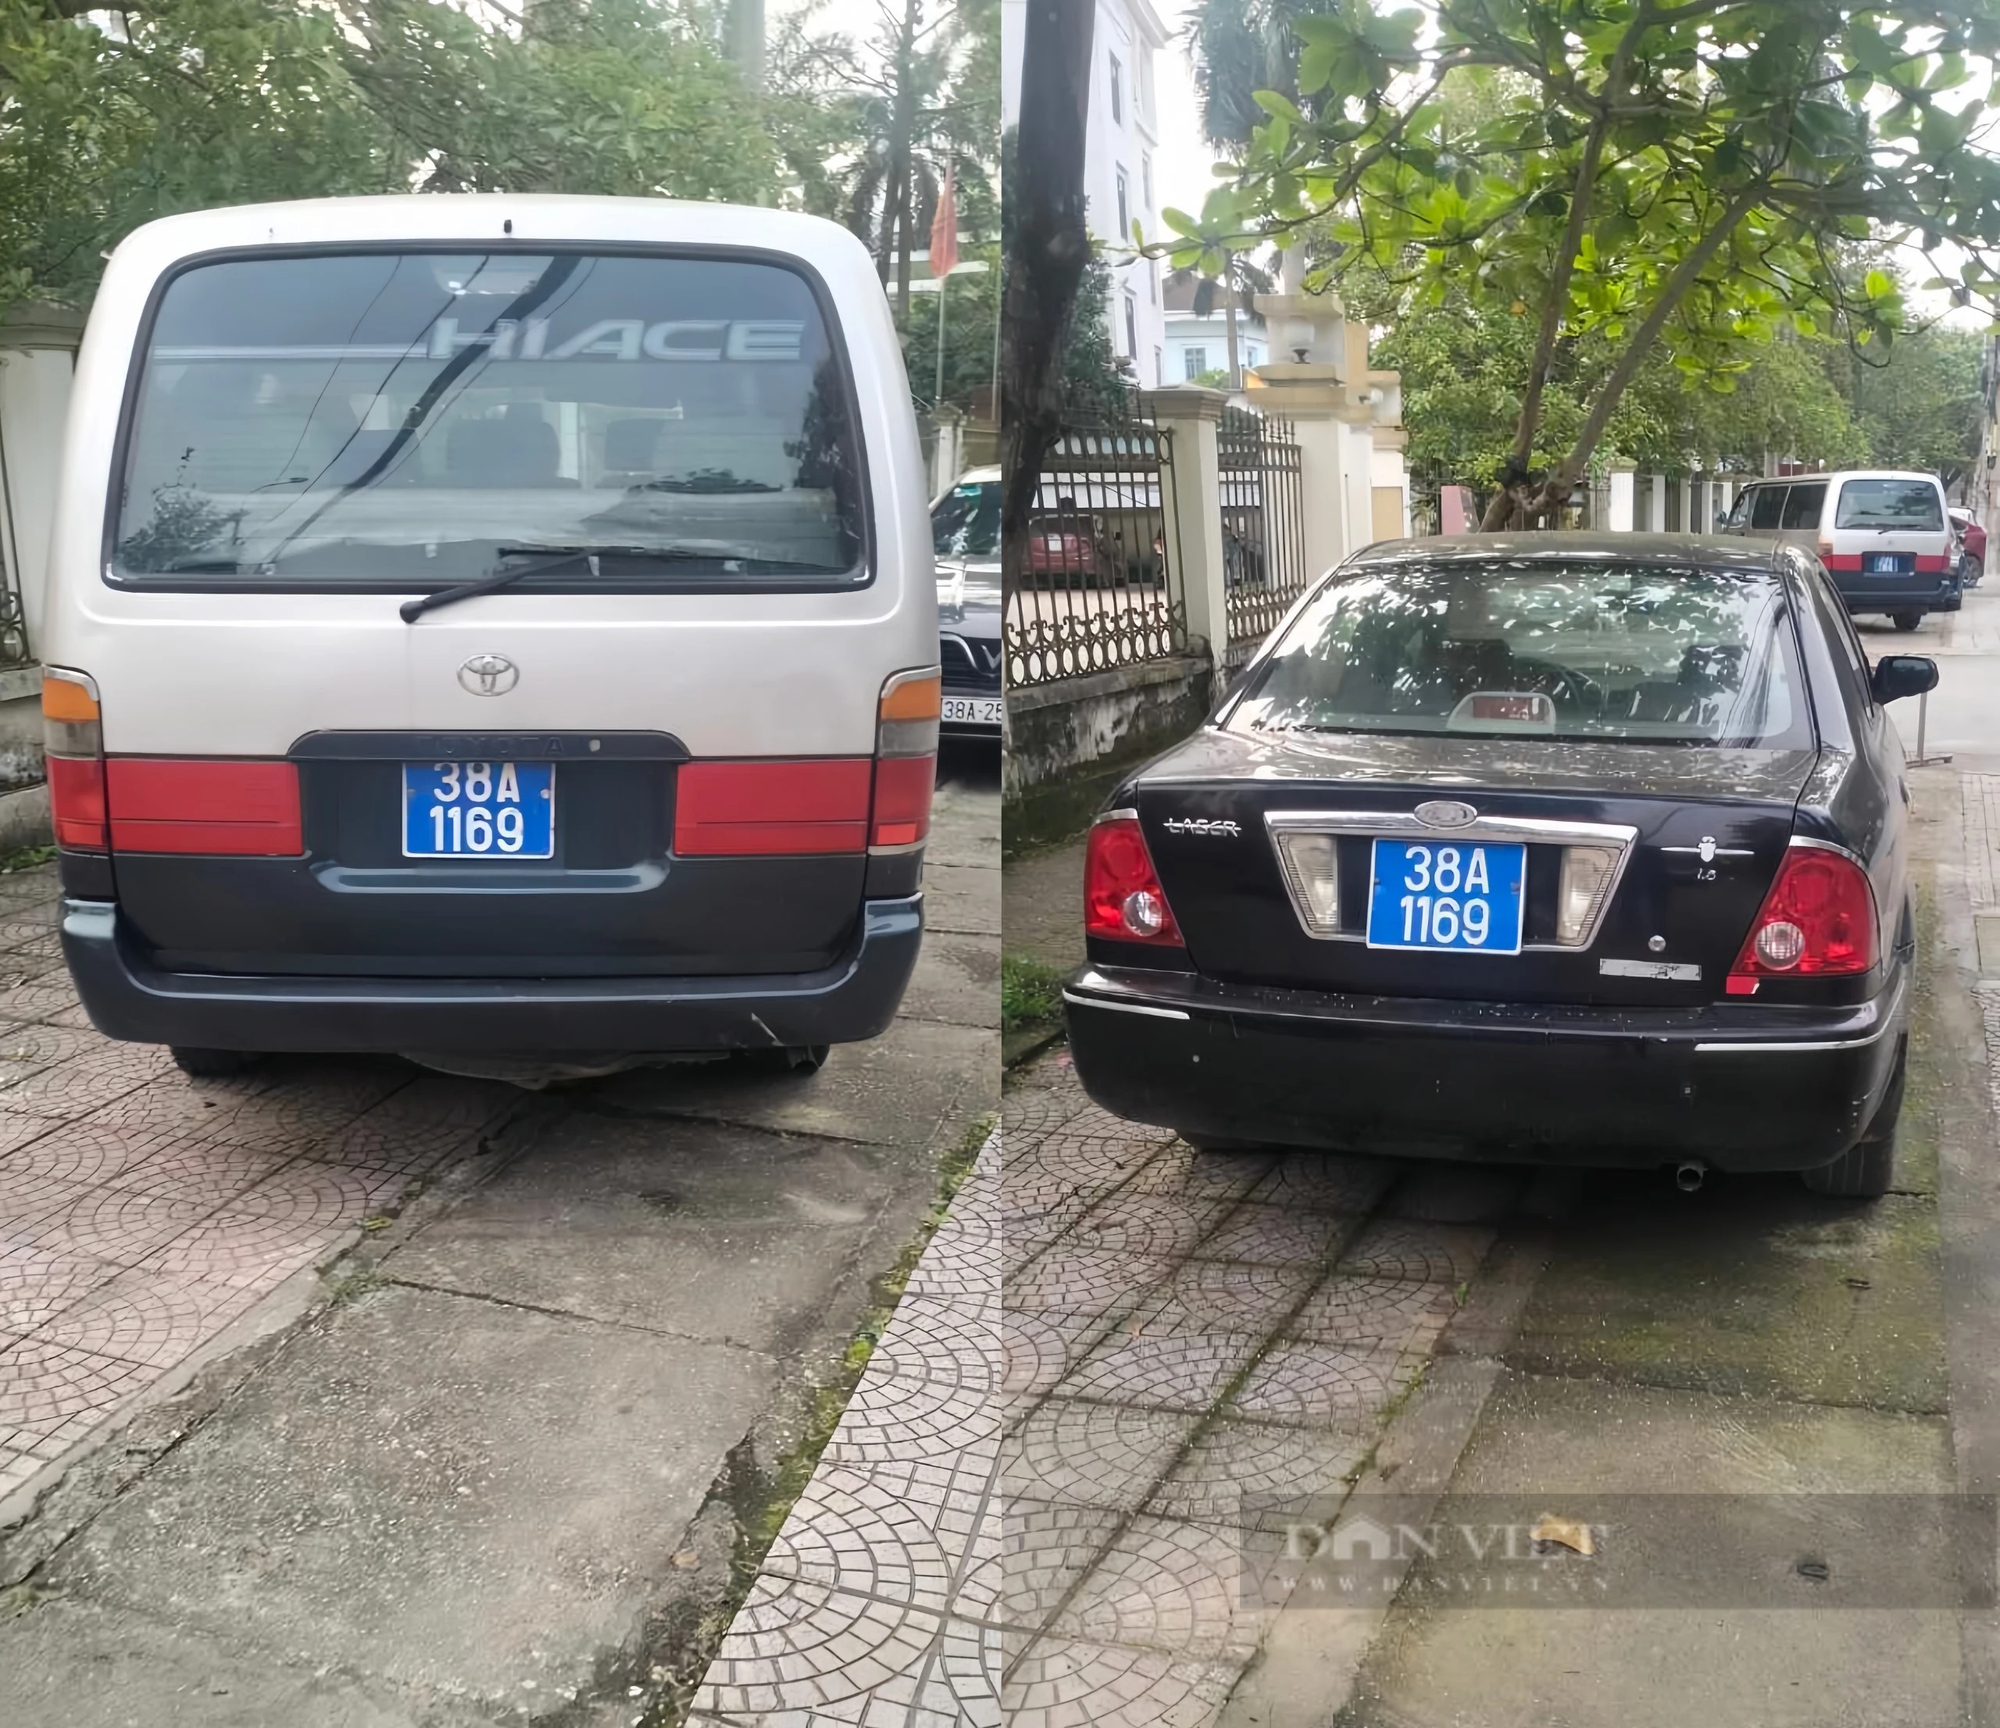 Hà Tĩnh: Xôn xao hình ảnh hai ô tô biển xanh giống nhau- Ảnh 1.